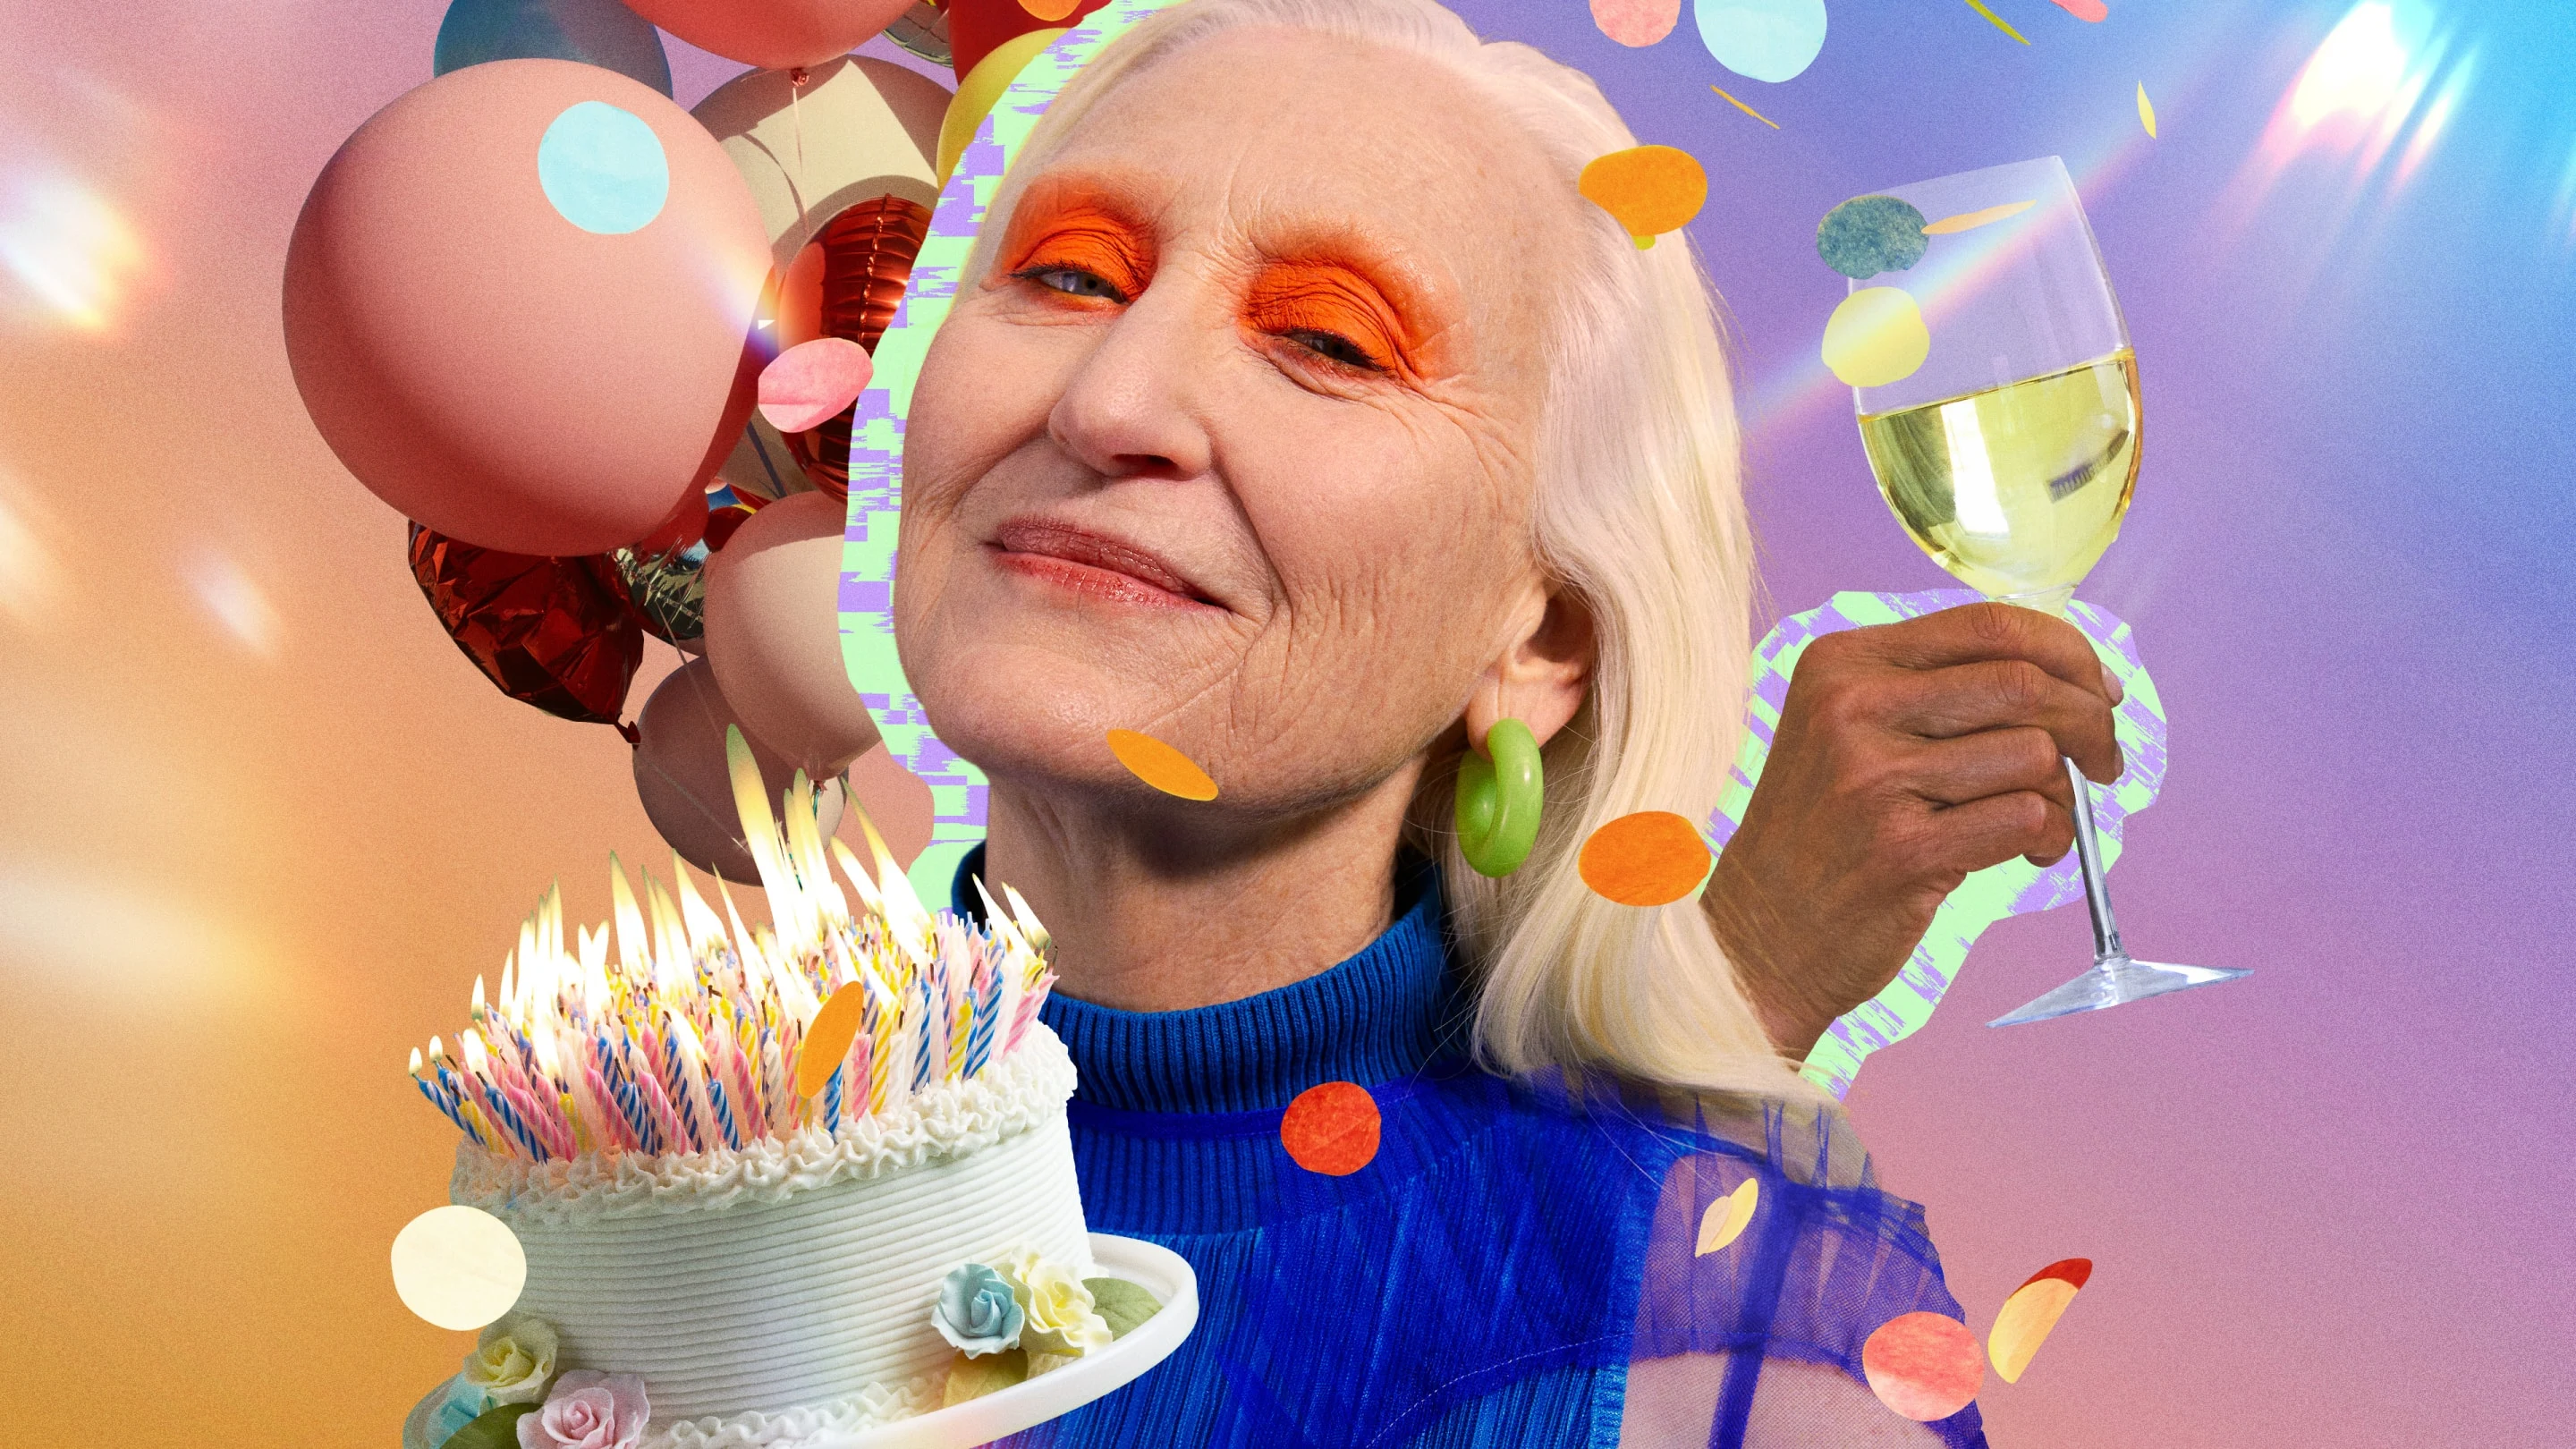 Colagem com uma mulher branca mais velha com maquiagem brilhante nos olhos cercada por balões, uma mão segurando uma taça de vinho e um bolo de aniversário cheio de velas.